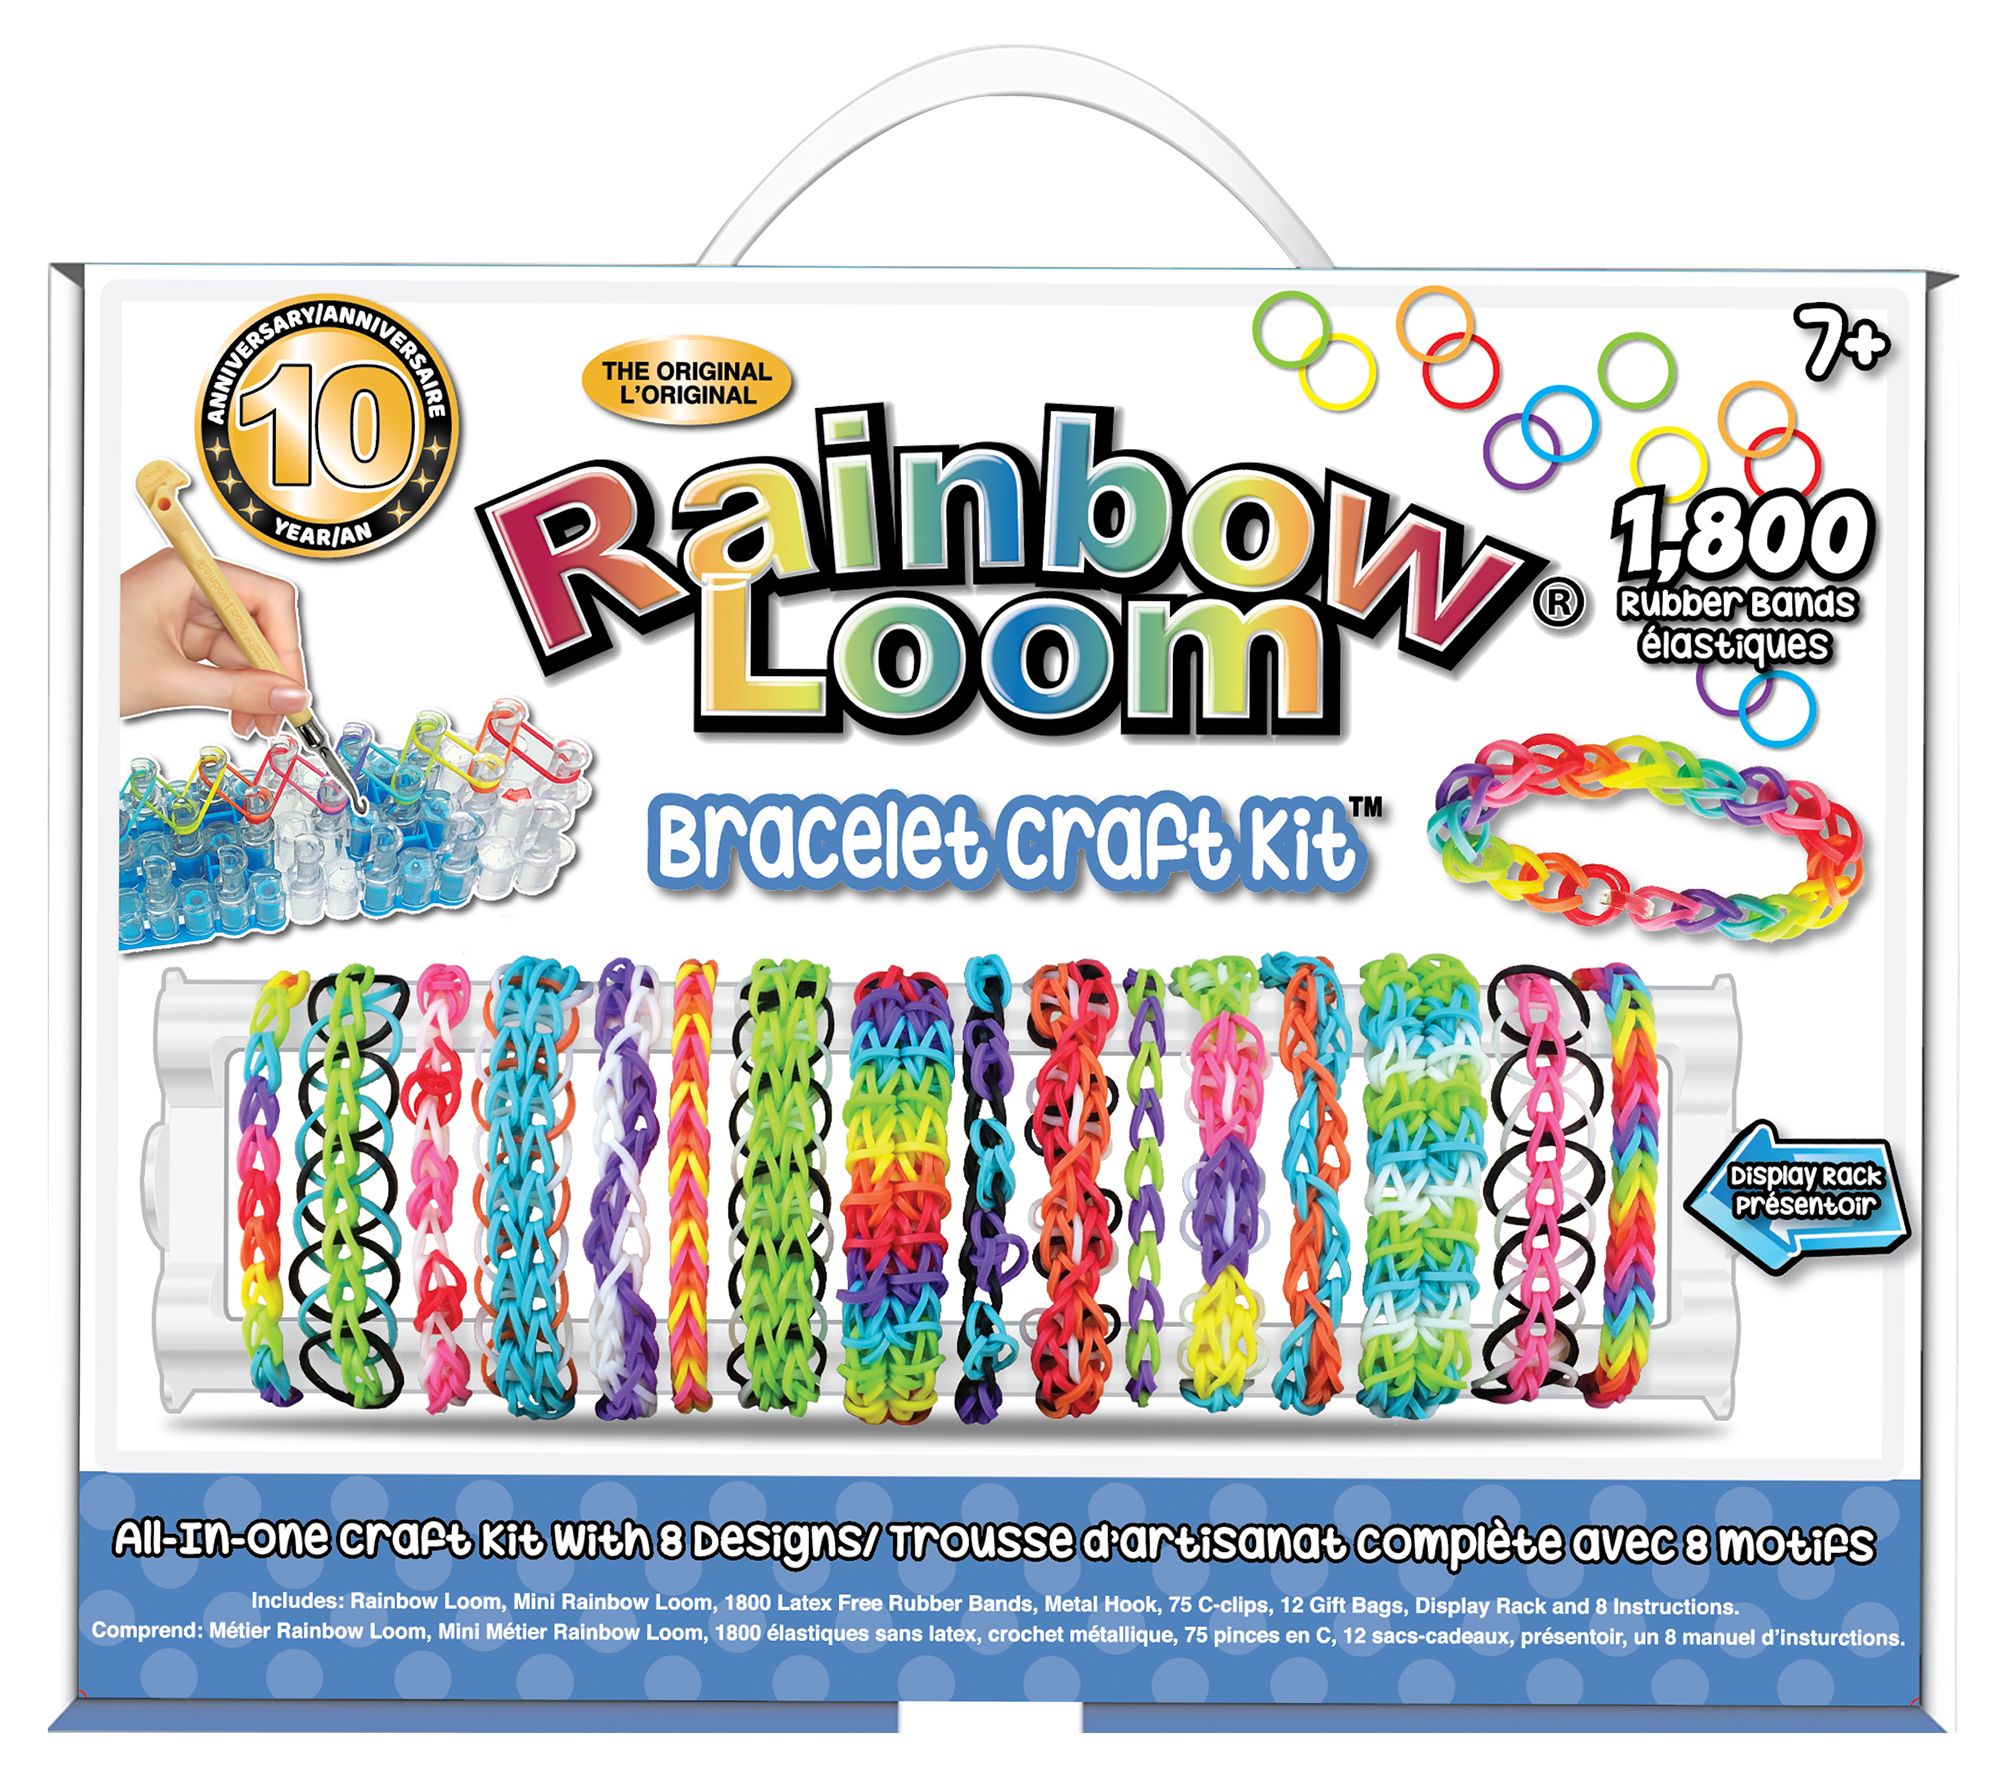 51 Best Rainbow loom storage ideas